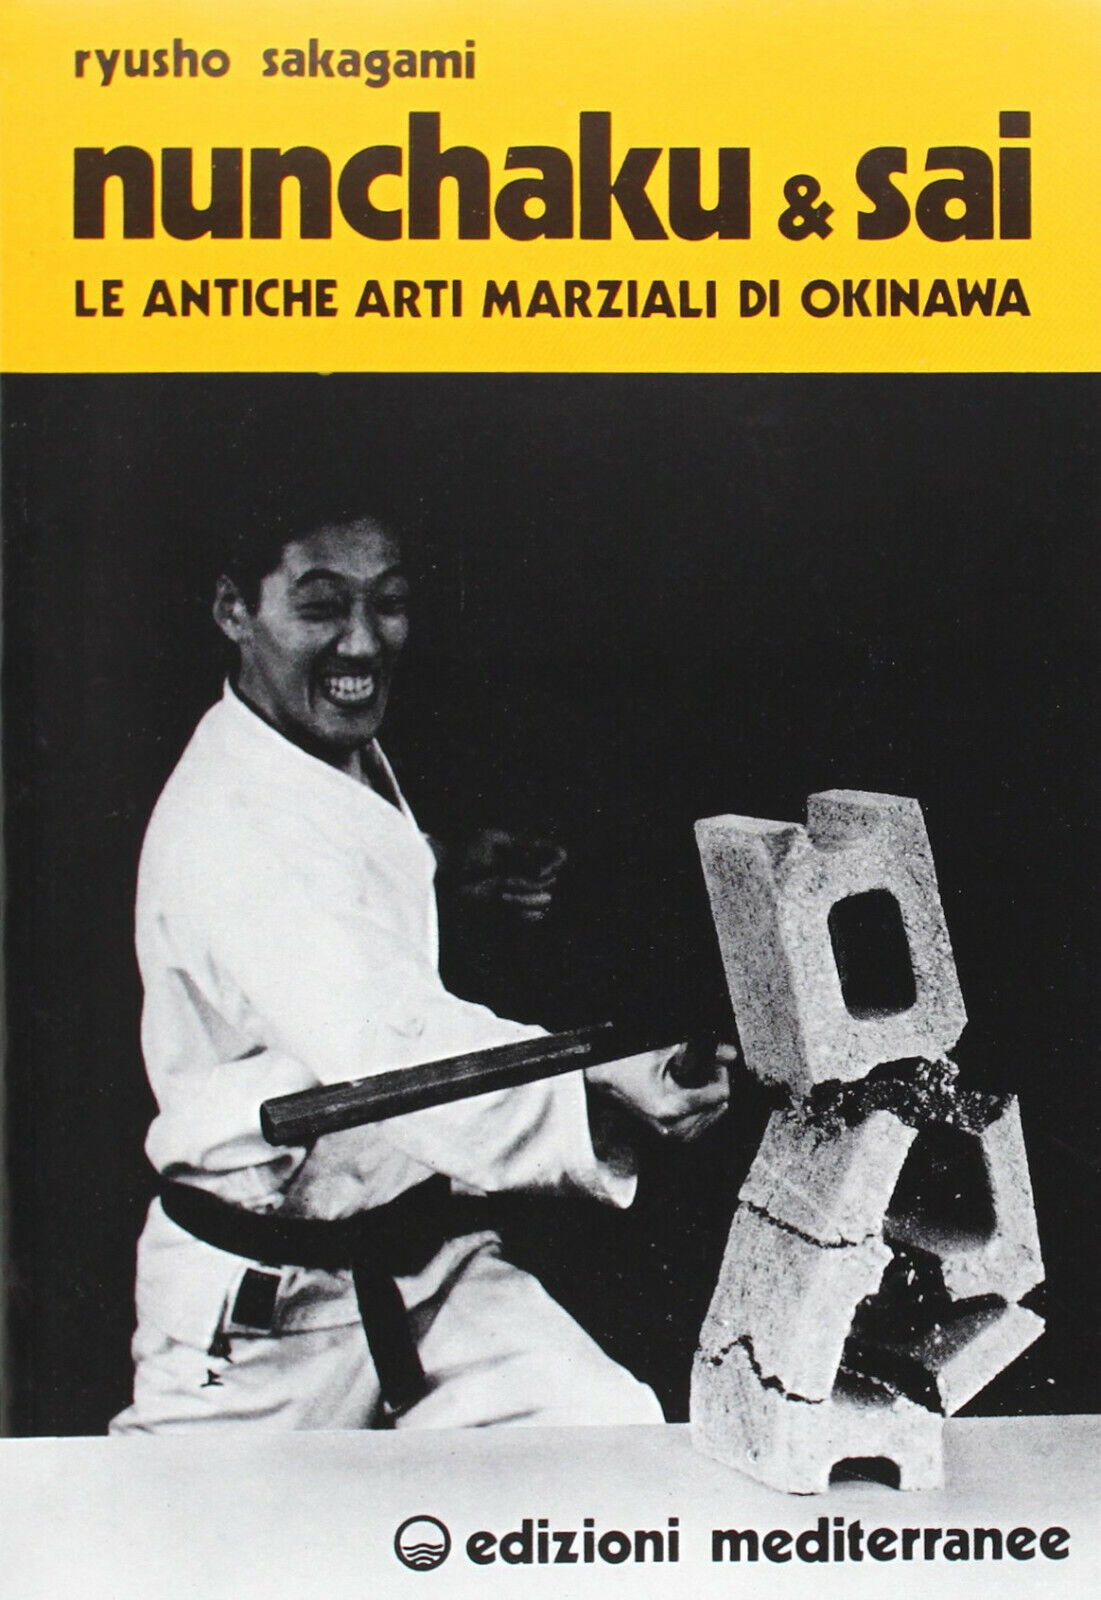 Nunchaku e sai - Ryusho Sakagami - Edizioni mediterranee, 1983 libro usato